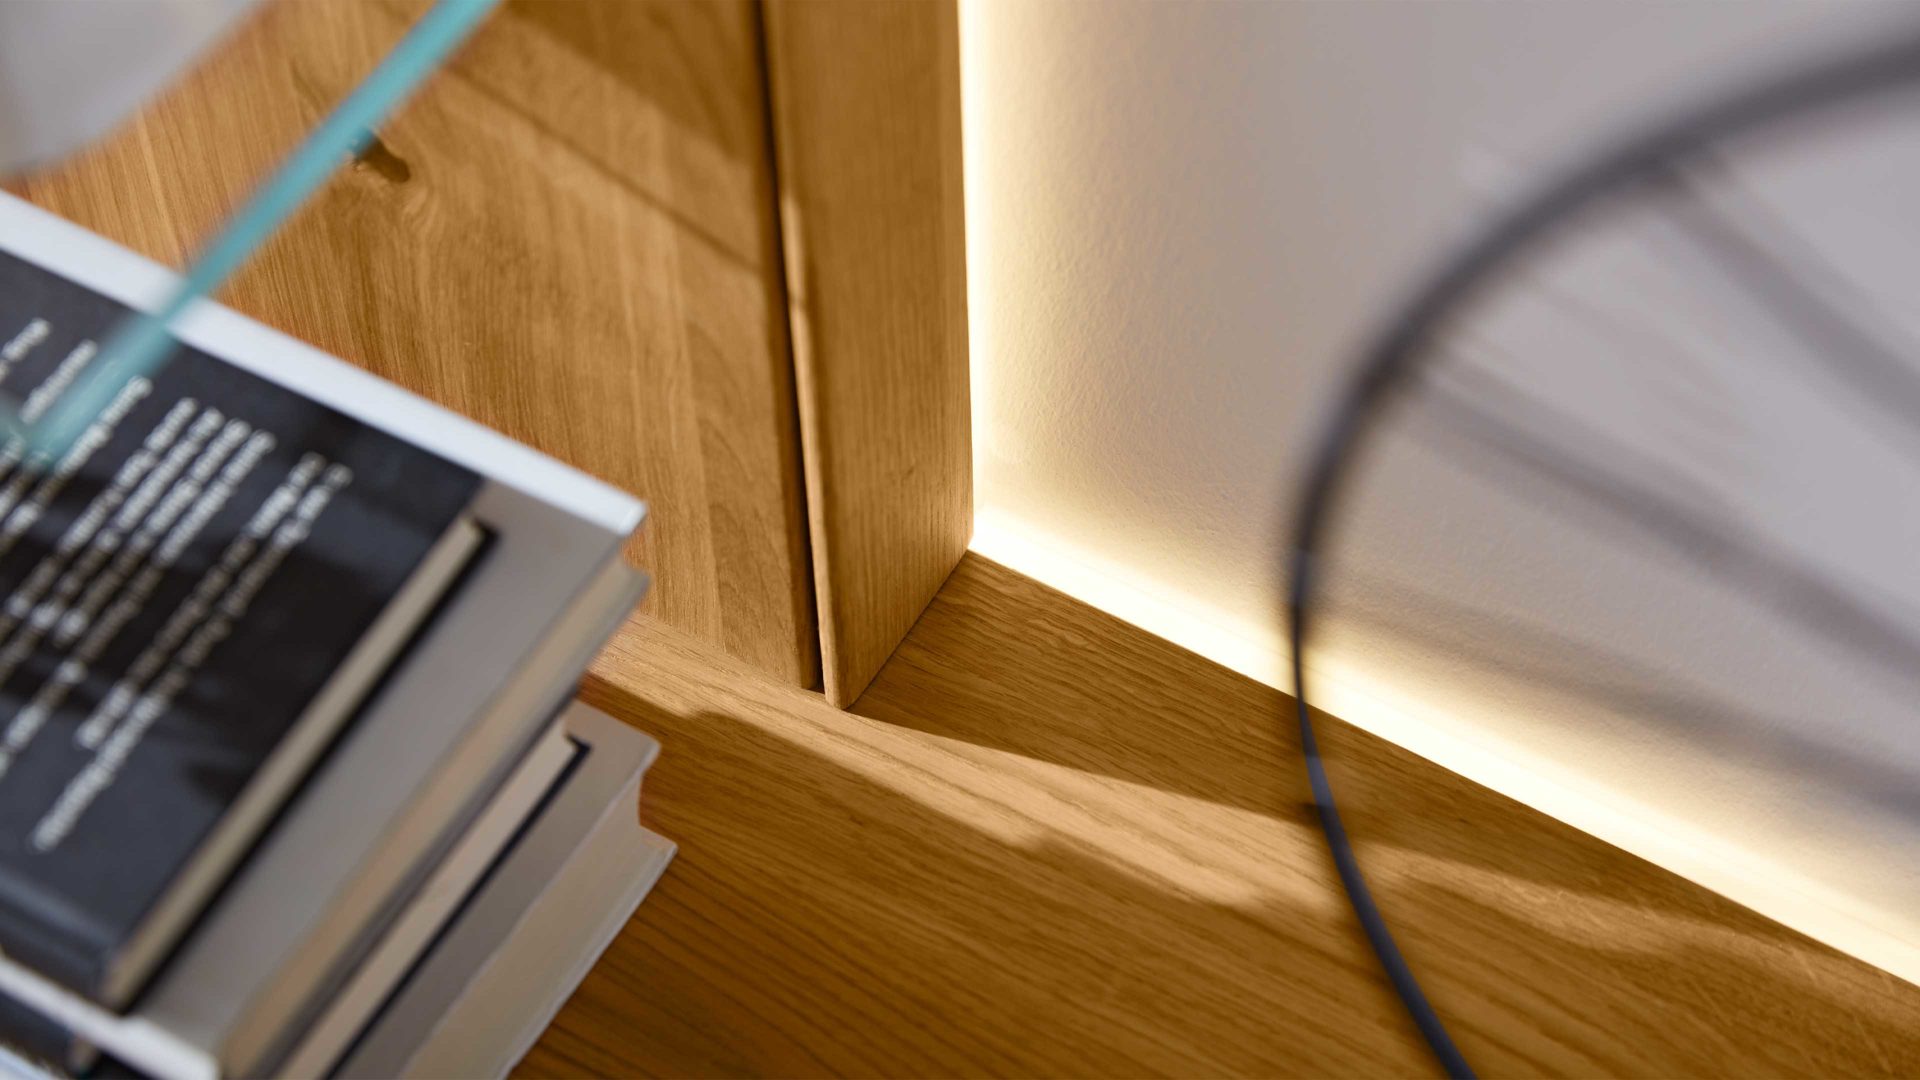 LED-Beleuchtung Interliving aus Kunststoff in Weiß Interliving Wohnzimmer Serie 2020 - Außenbeleuchtung 195556 15,9 Watt